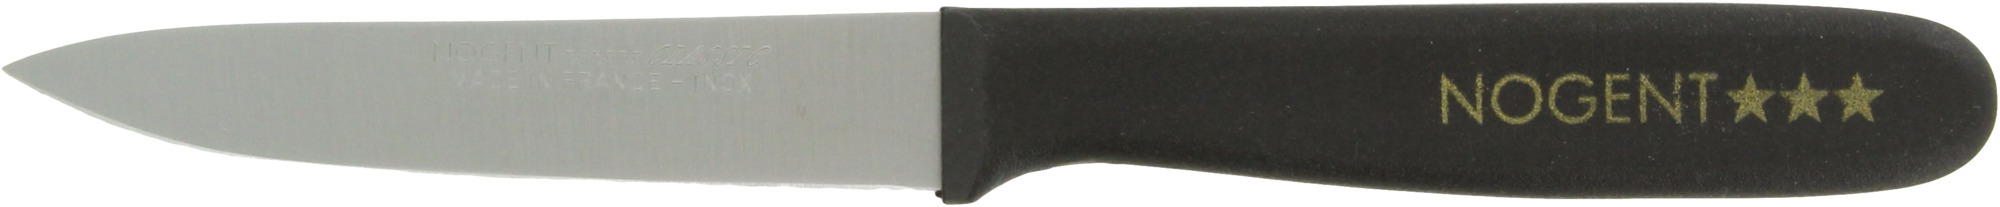 Couteau manche résine Classic Nogent - Office - Lame pointue 9 cm lisse - Manche noir